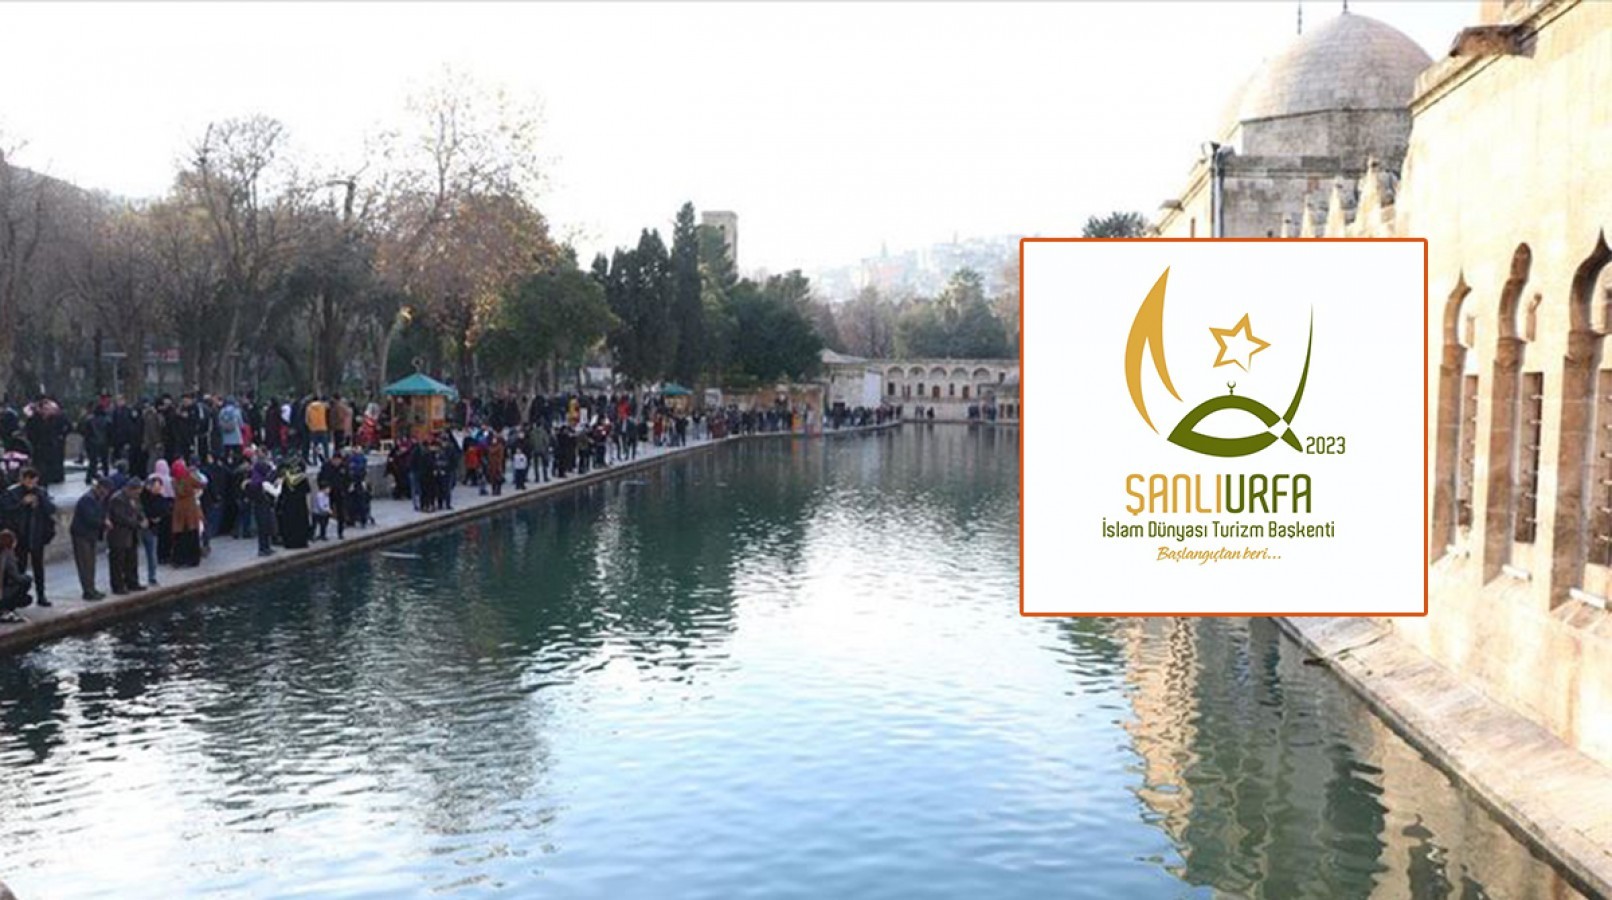 Şanlıurfa 2023 Yılı İslam Dünyası Turizm Başkenti Sloganı ve Logosu